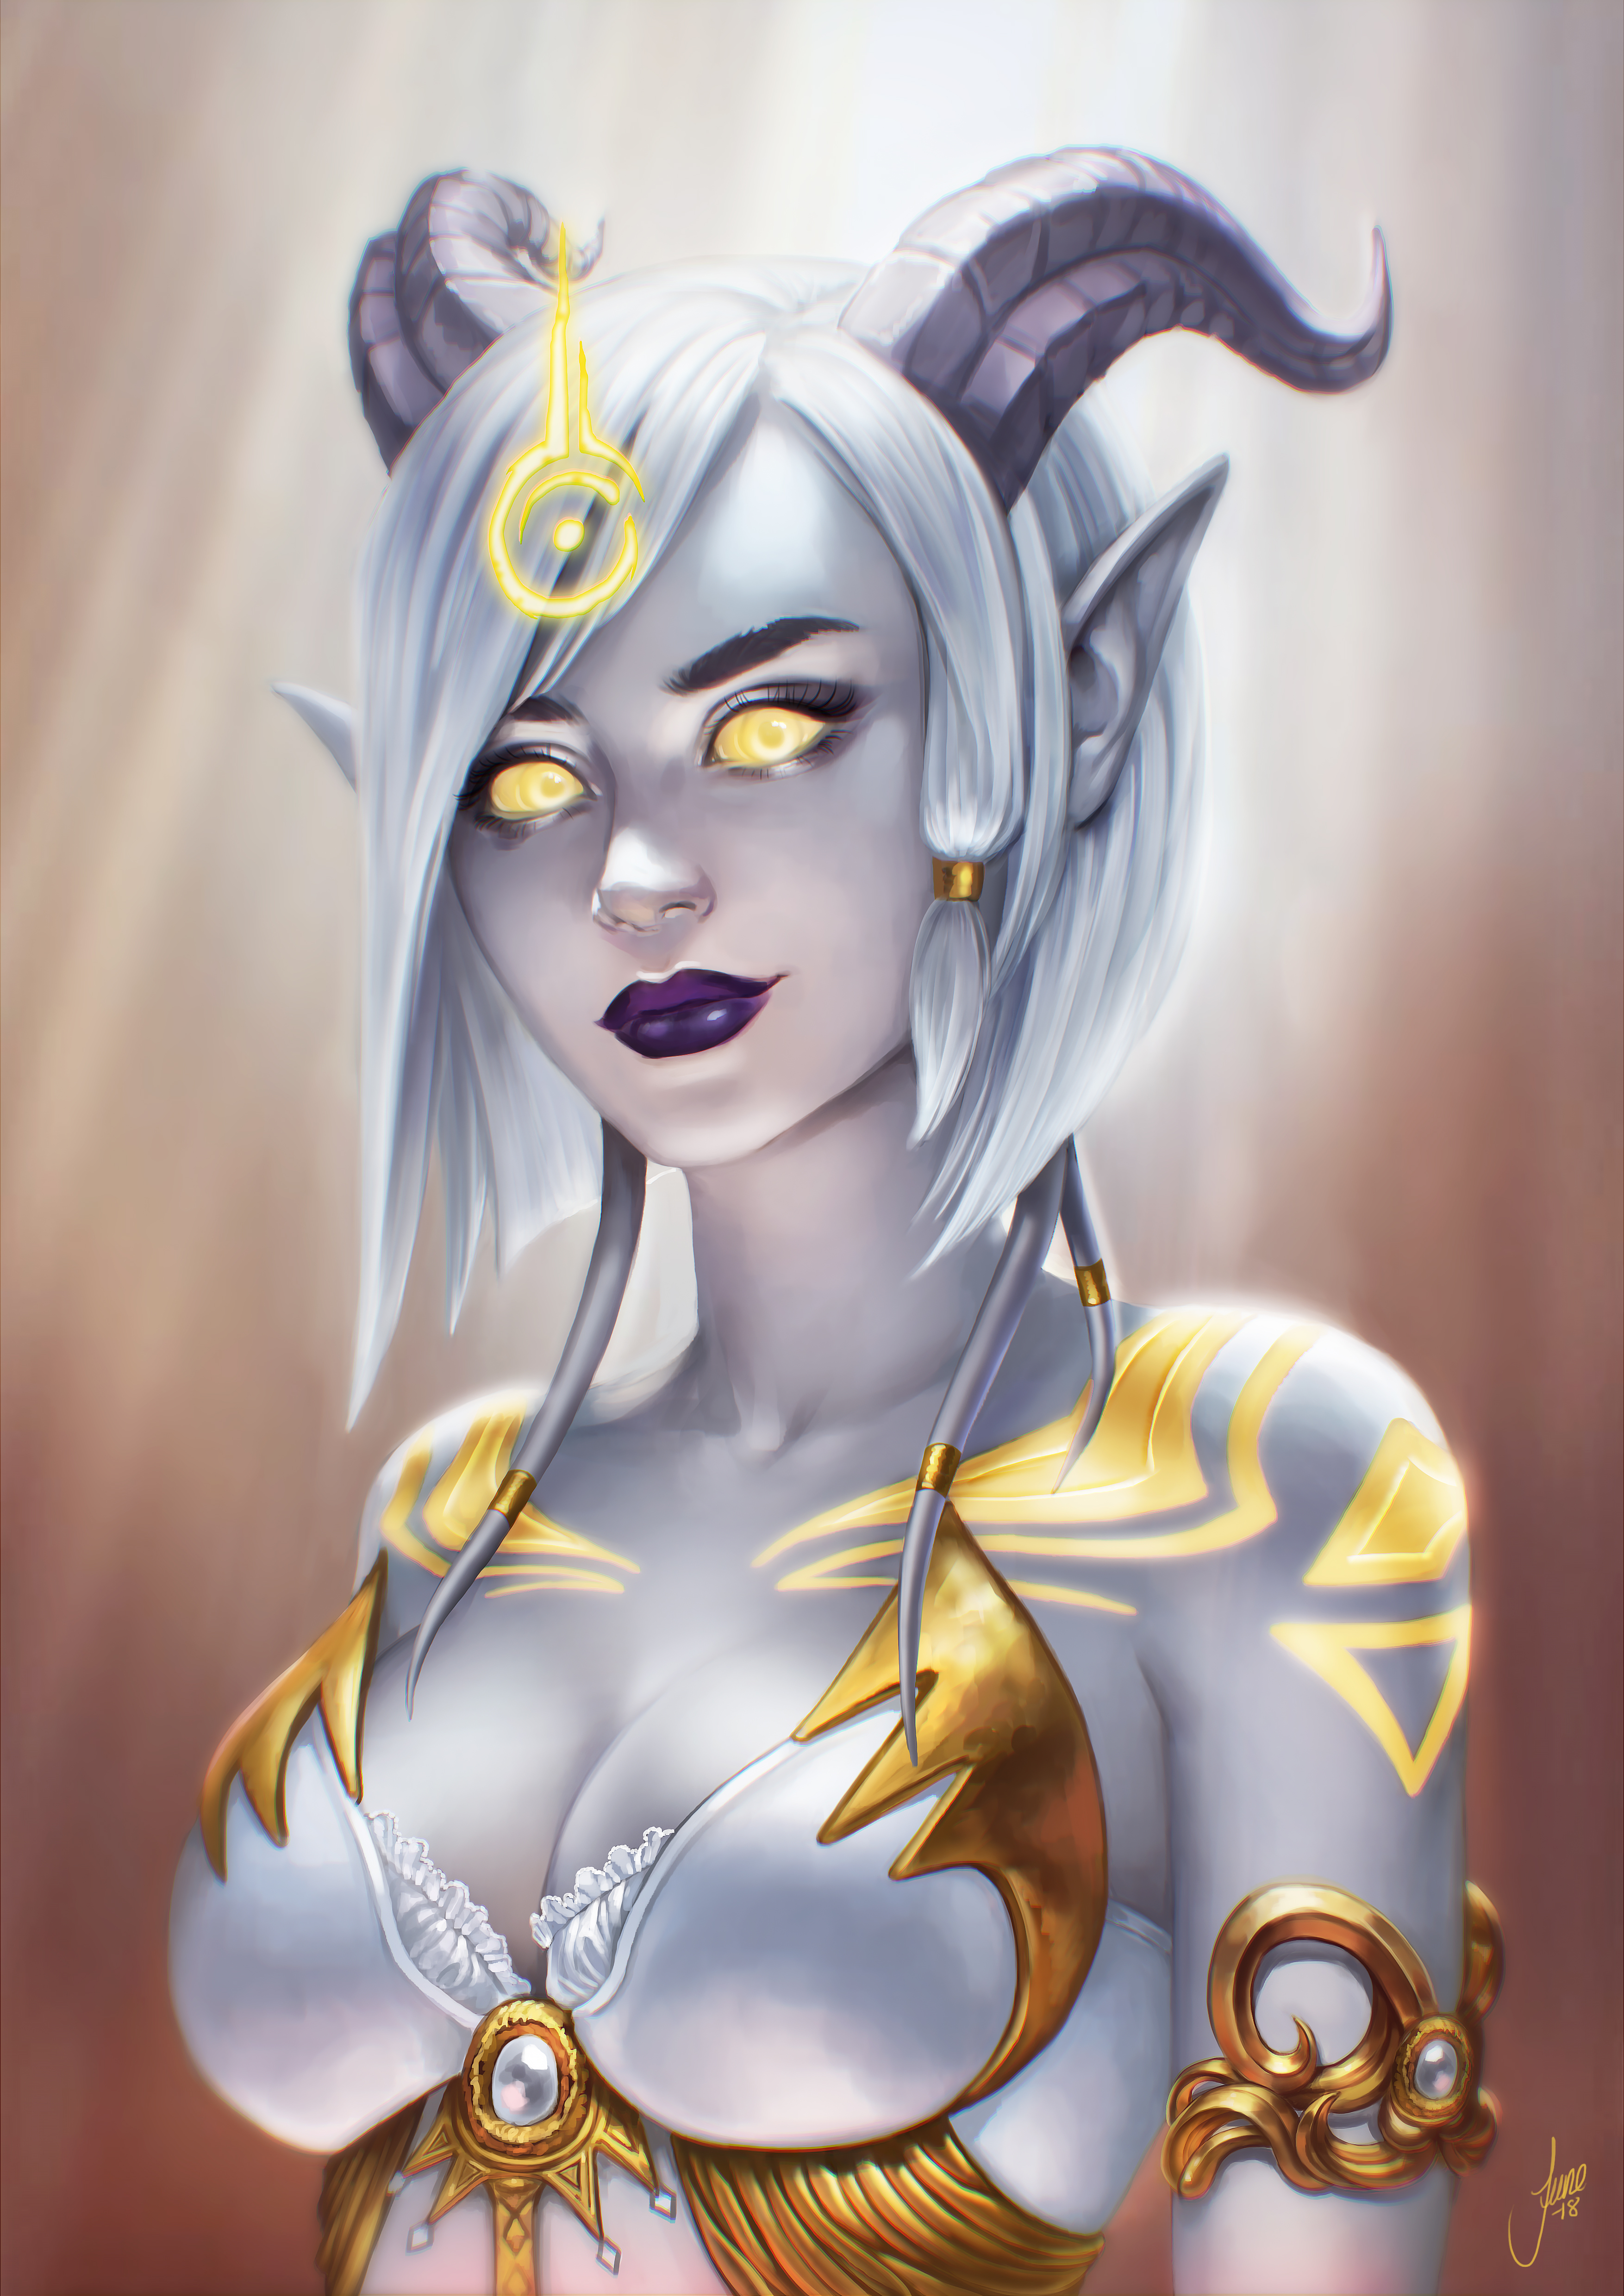 General 3508x4961 draenei World of Warcraft fantasy girl glowing eyes horns PC gaming fantasy art yellow eyes